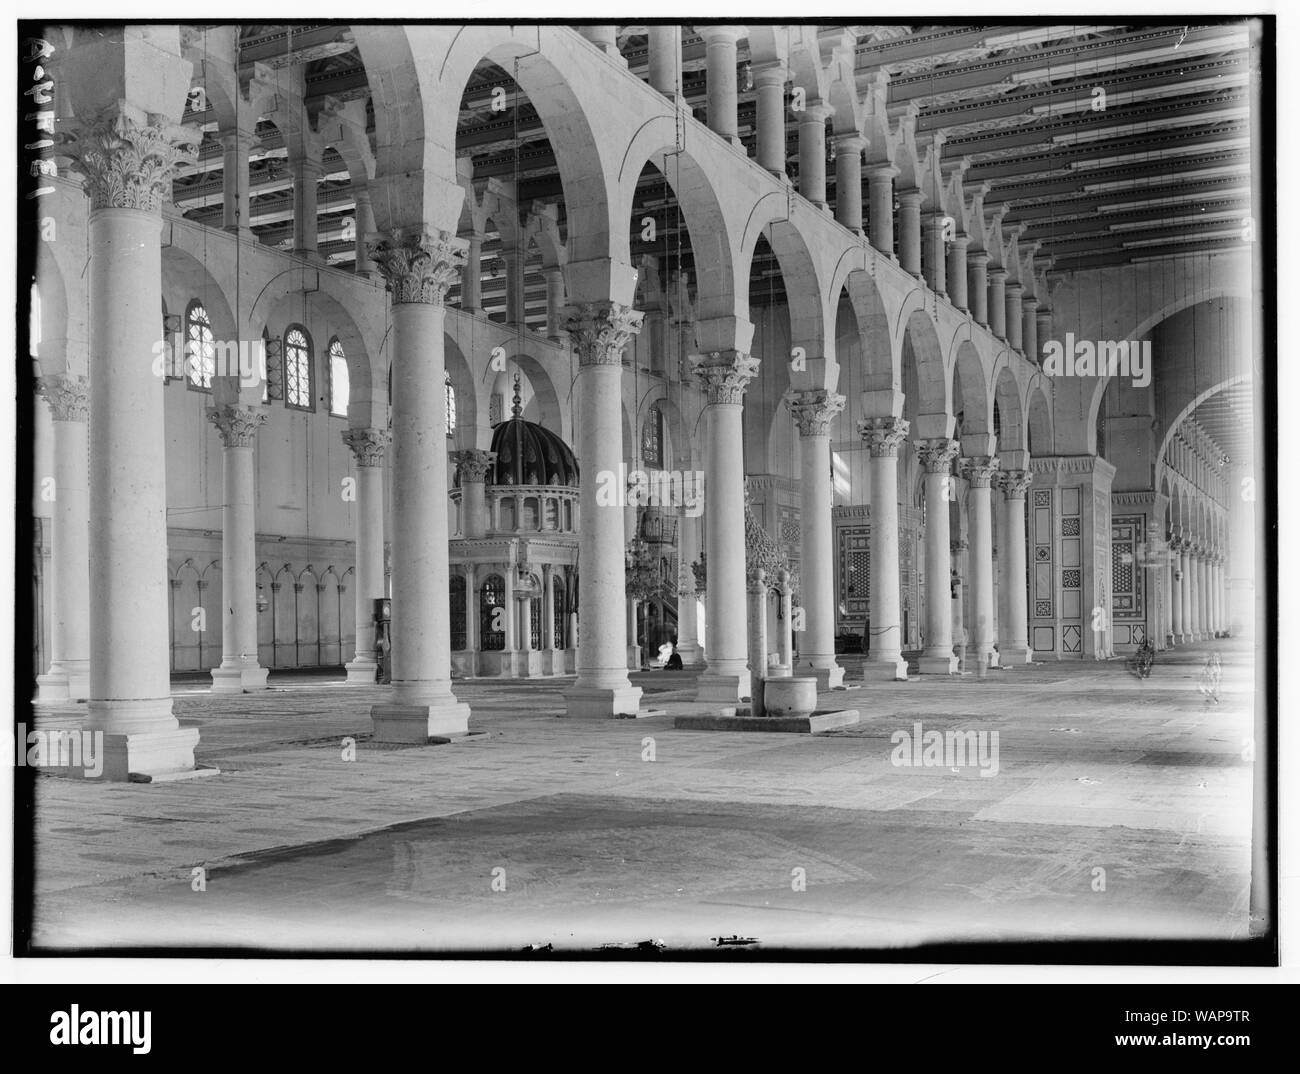 Damas. La mosquée Ommayad. L'intérieur de la mosquée, vue générale, côté nord Banque D'Images